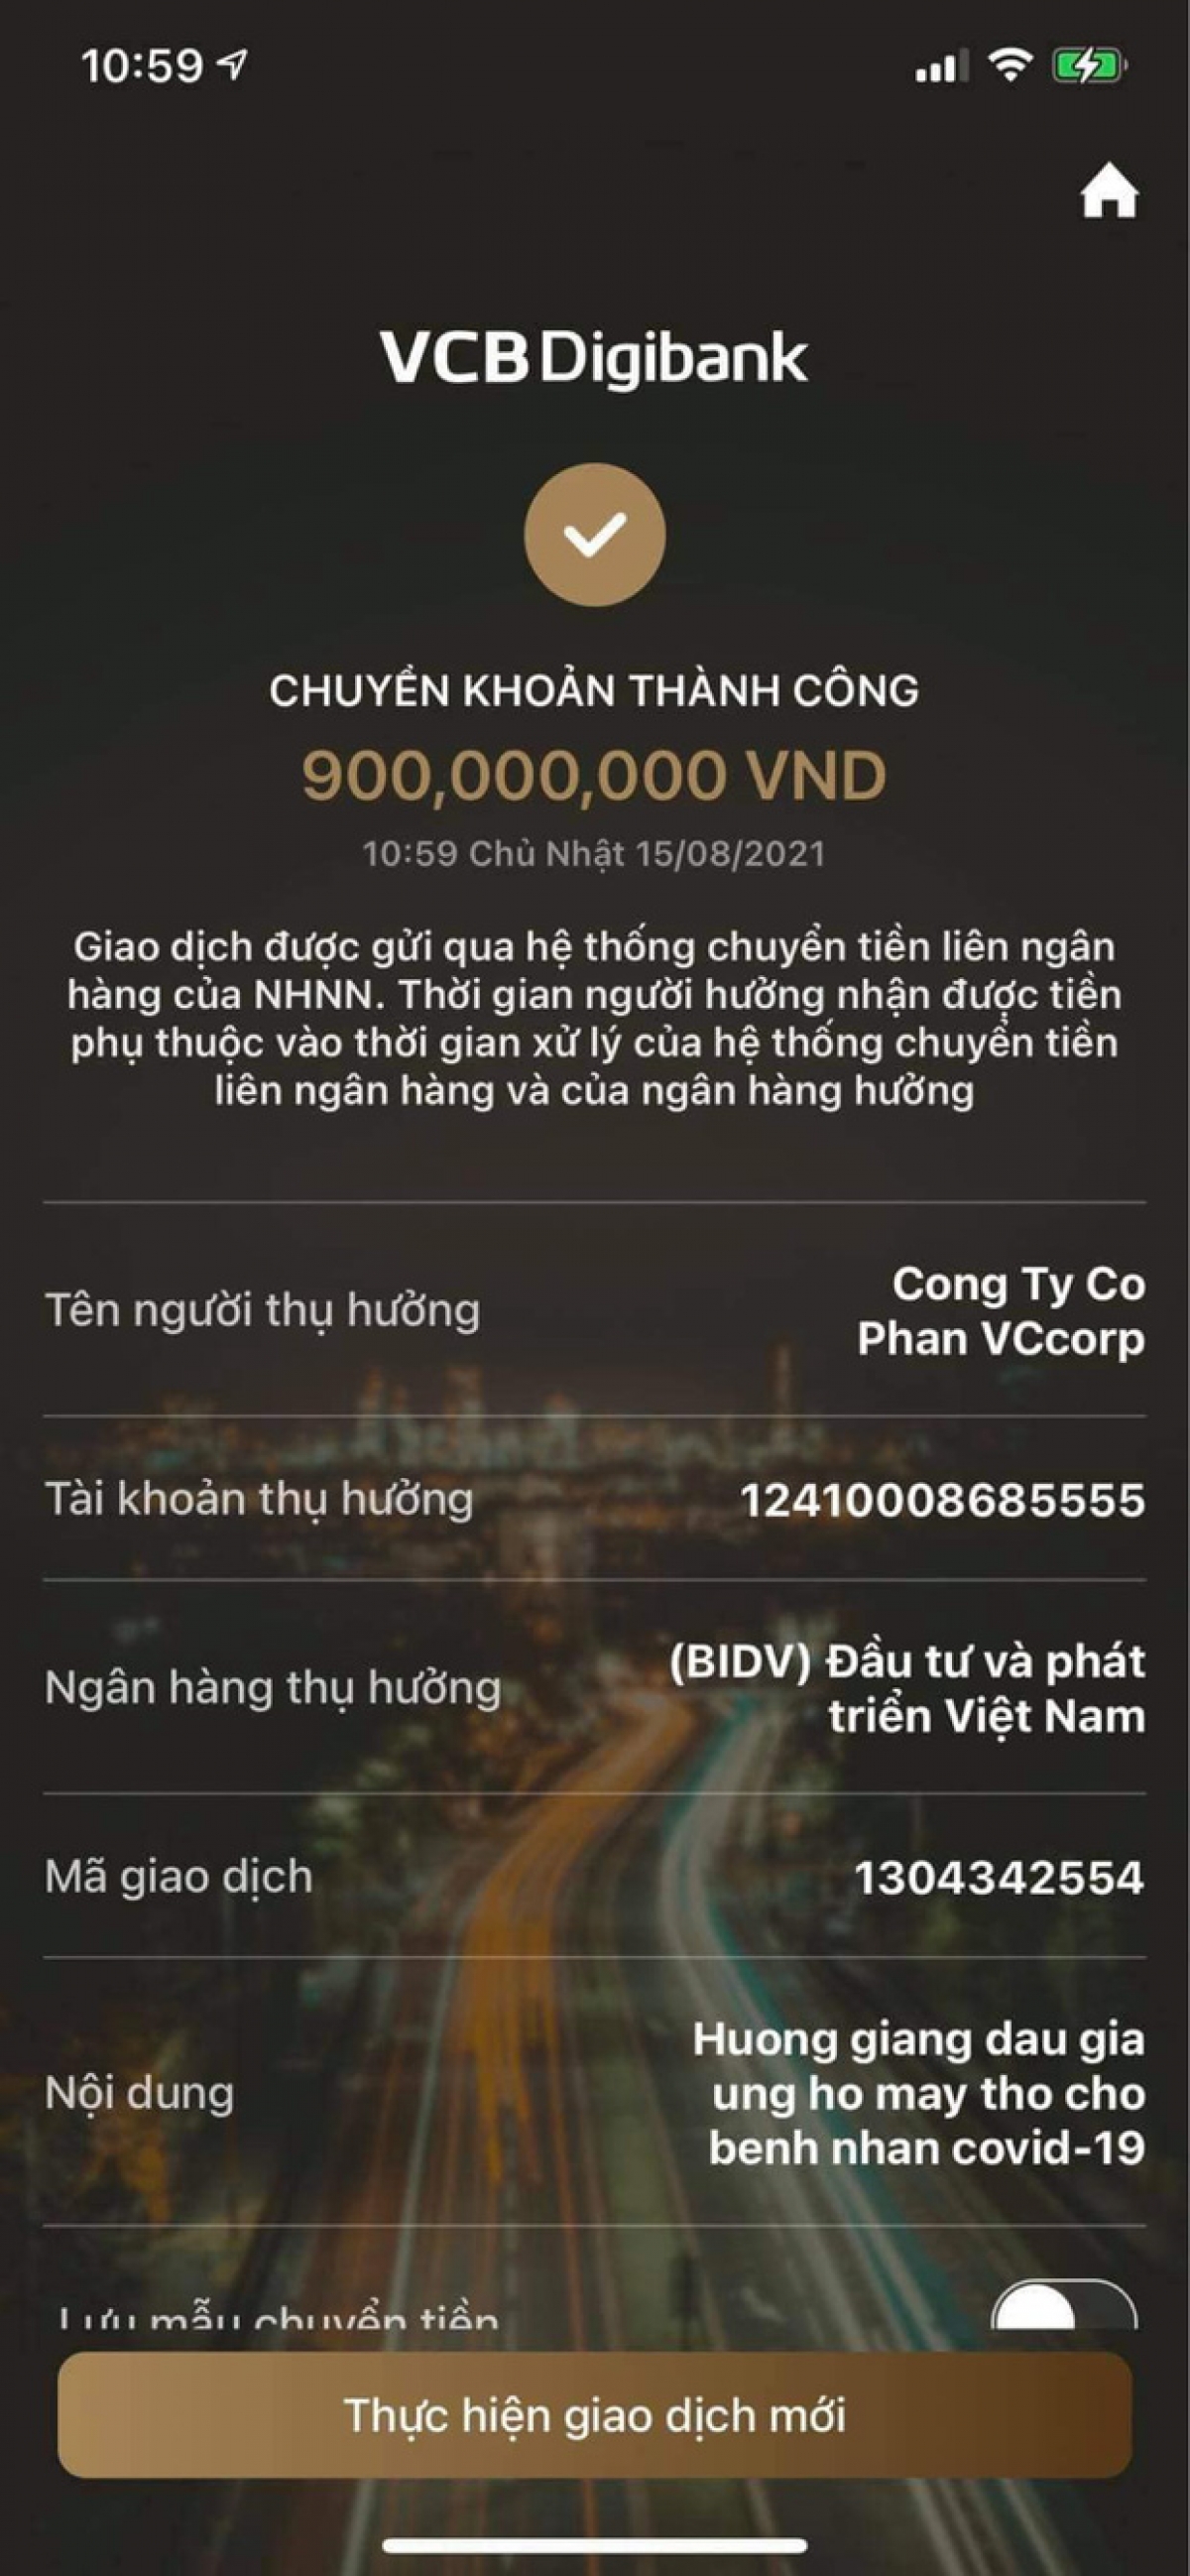 Hoa hậu Hương Giang đấu giá 900 triệu ủng hộ máy thở chống dịch Covid-19 - Ảnh 2.